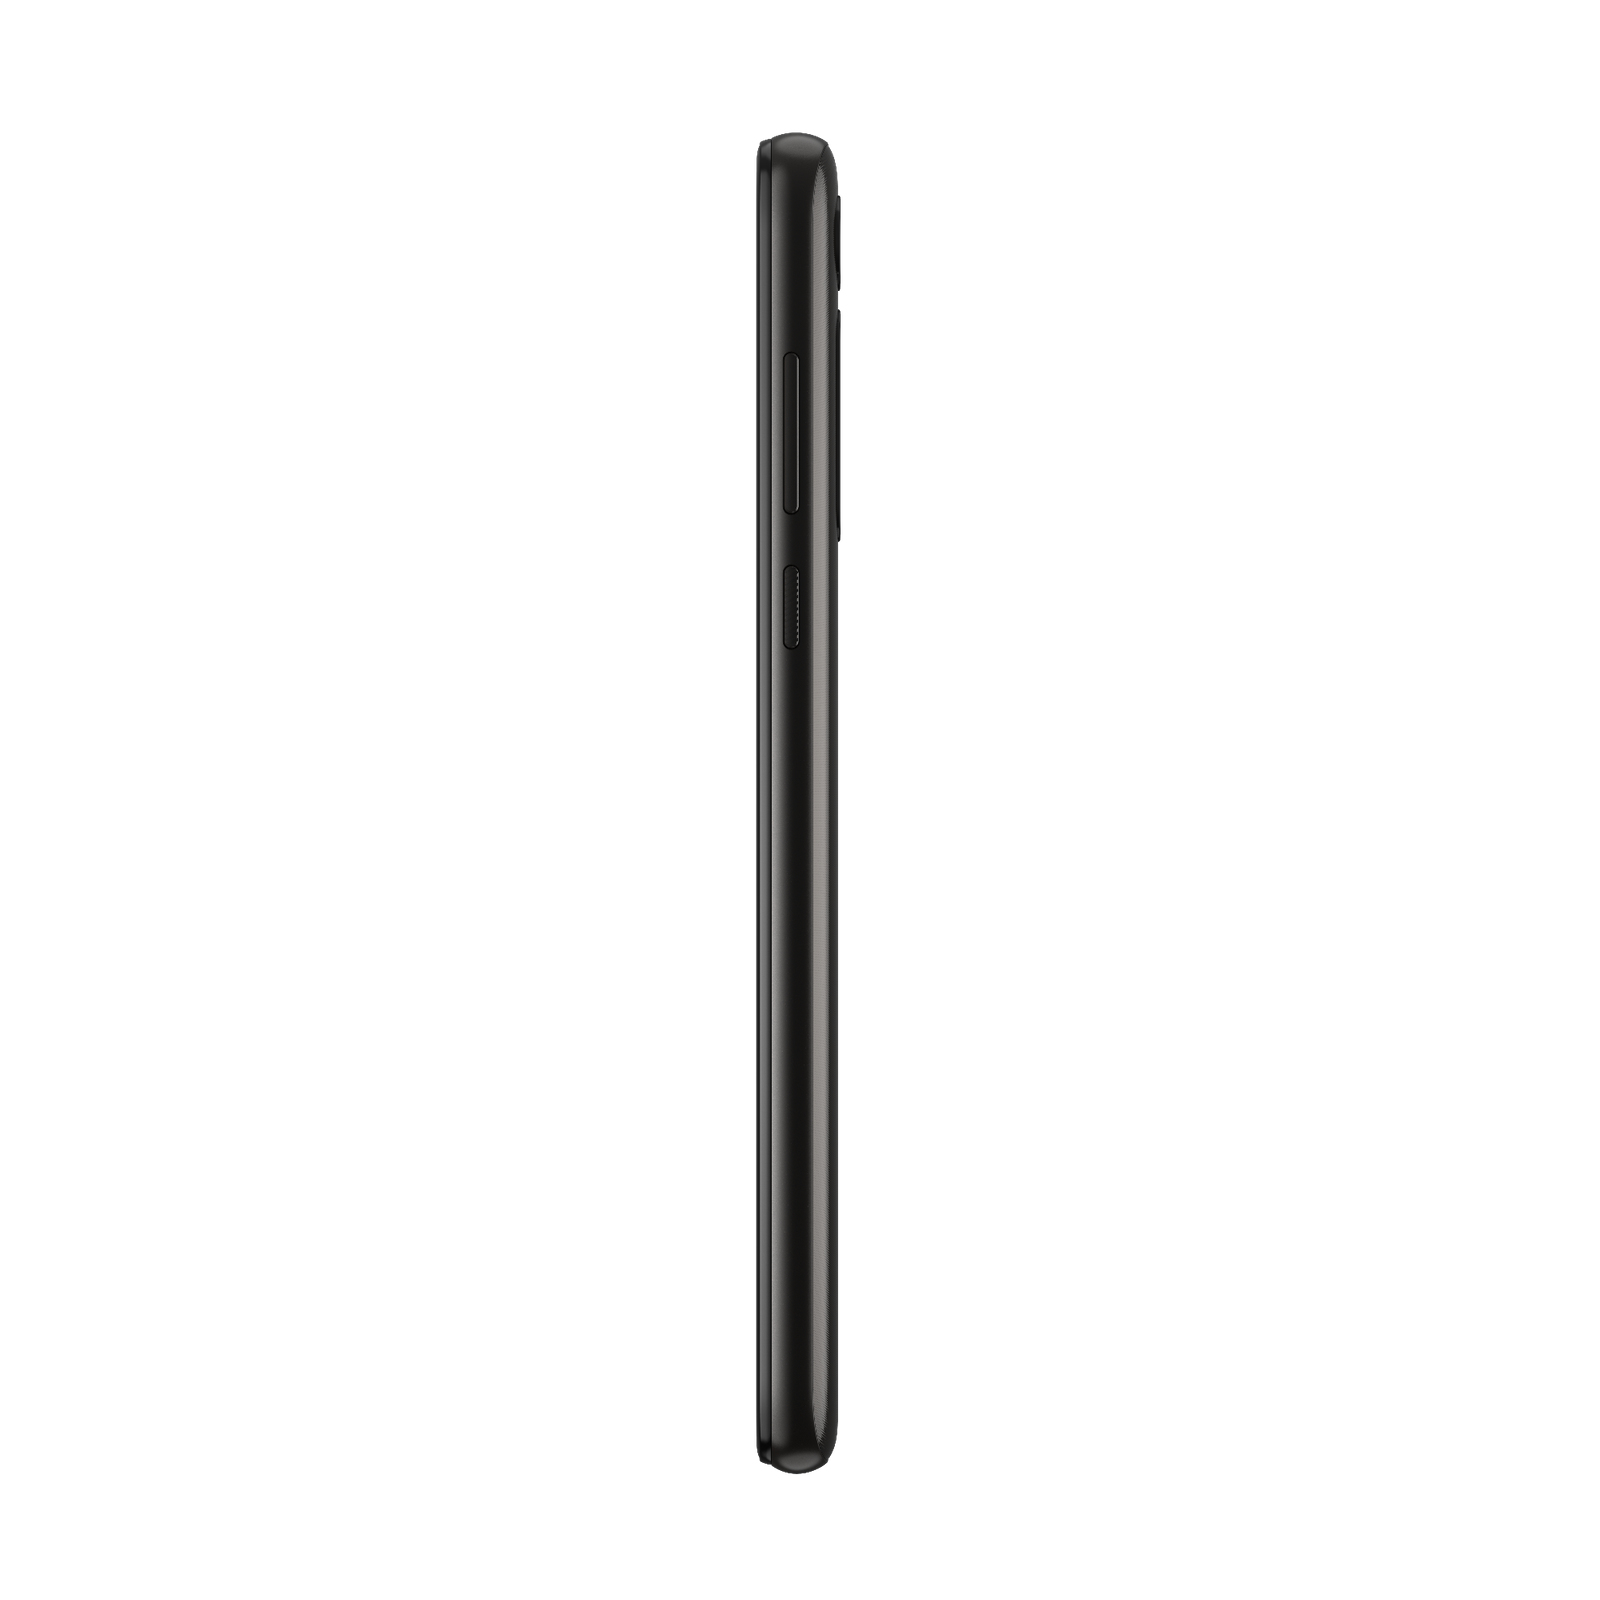 Smartphone Motorola Moto G8 Power - vulkan zwart